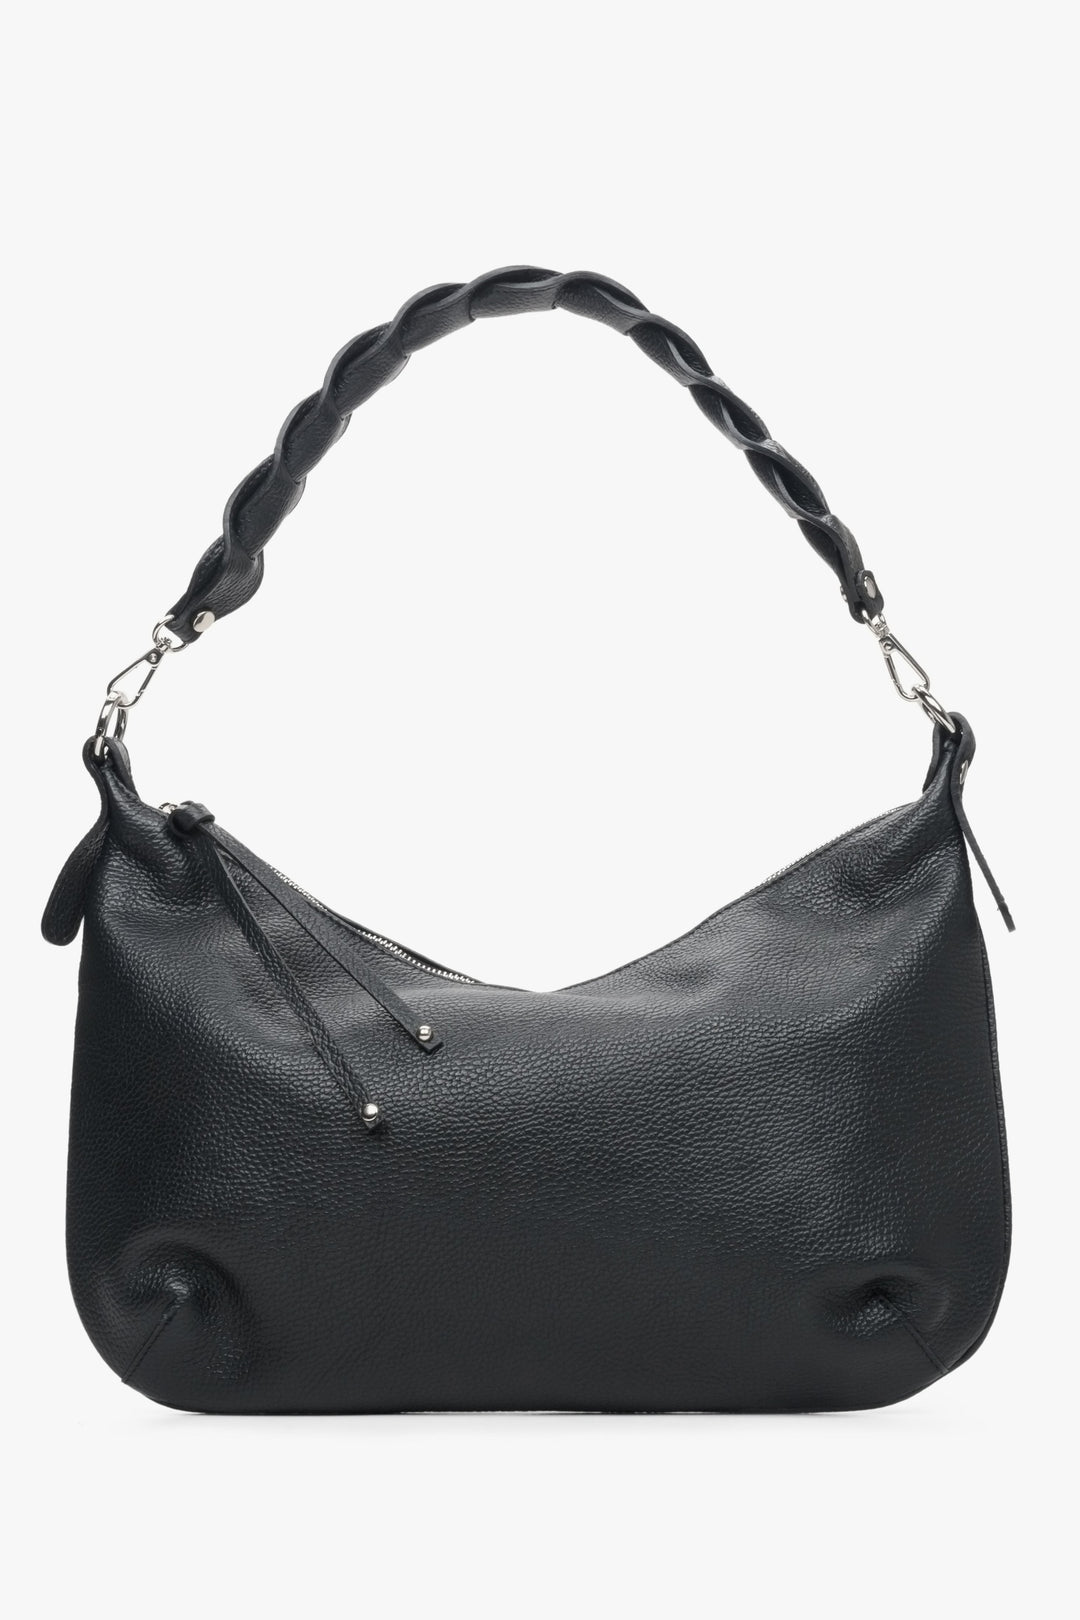 Women's shoulder bag by Estro in black.